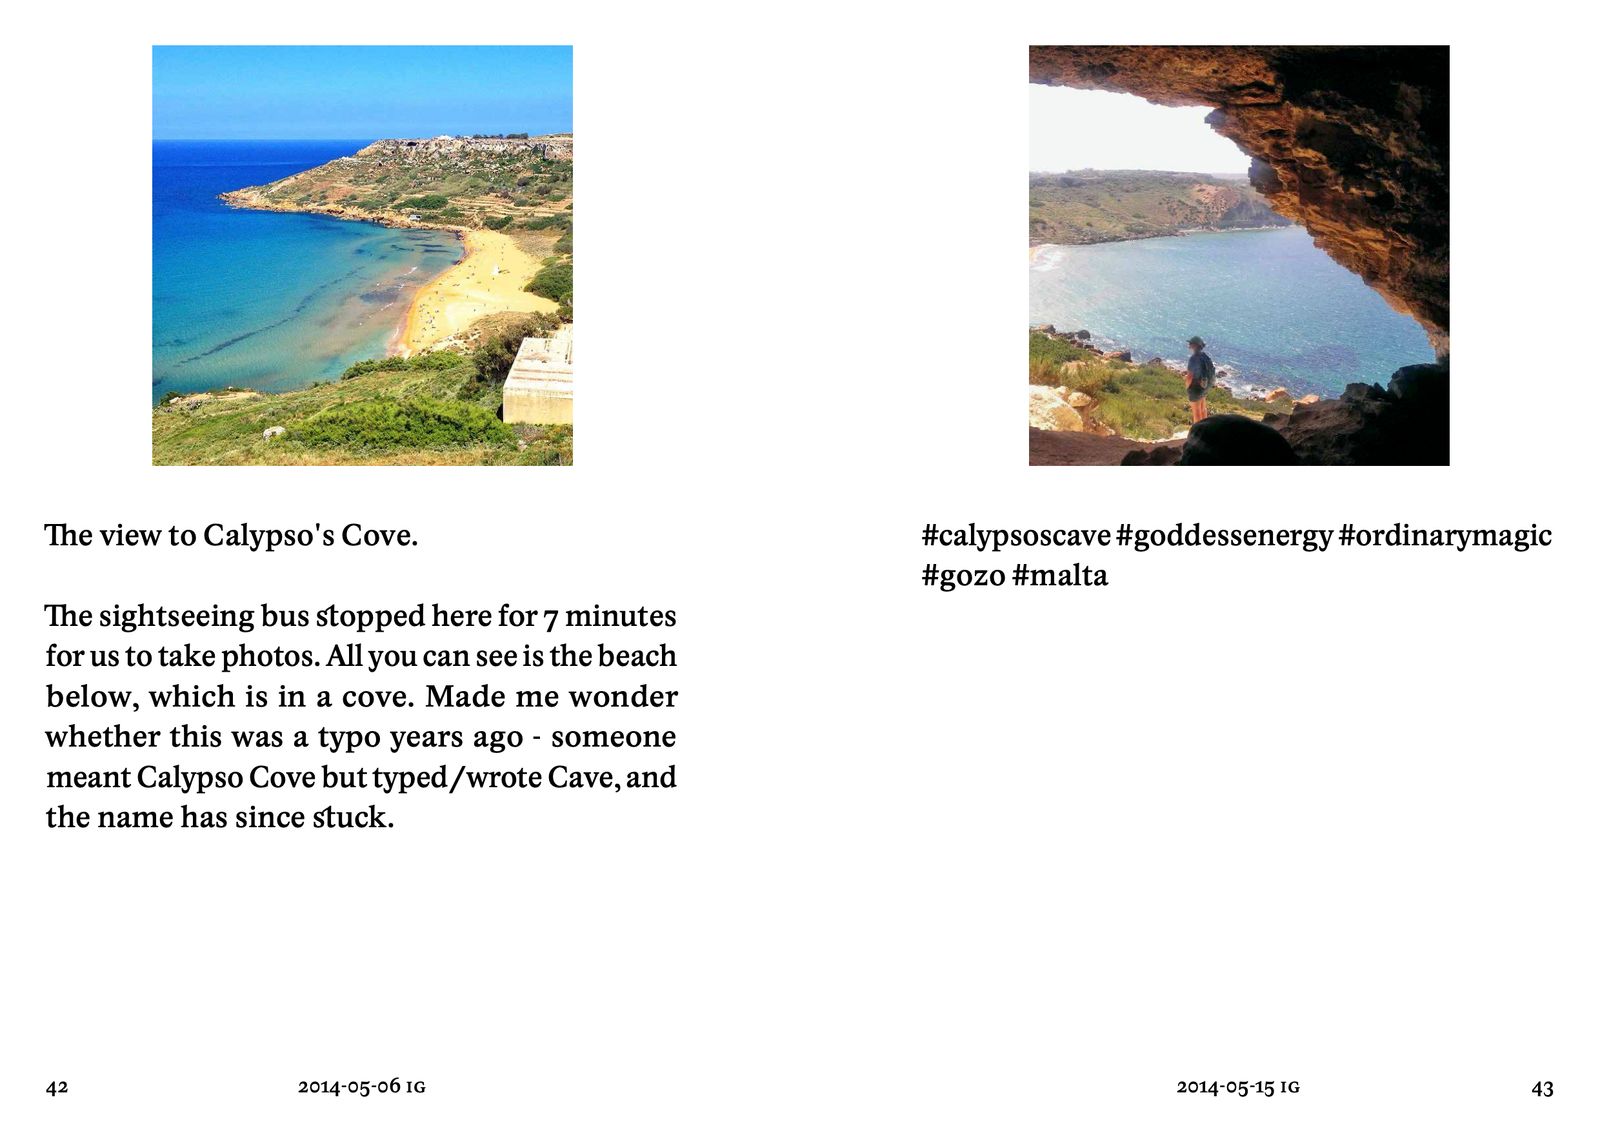 Calypso Cave - #views on #views